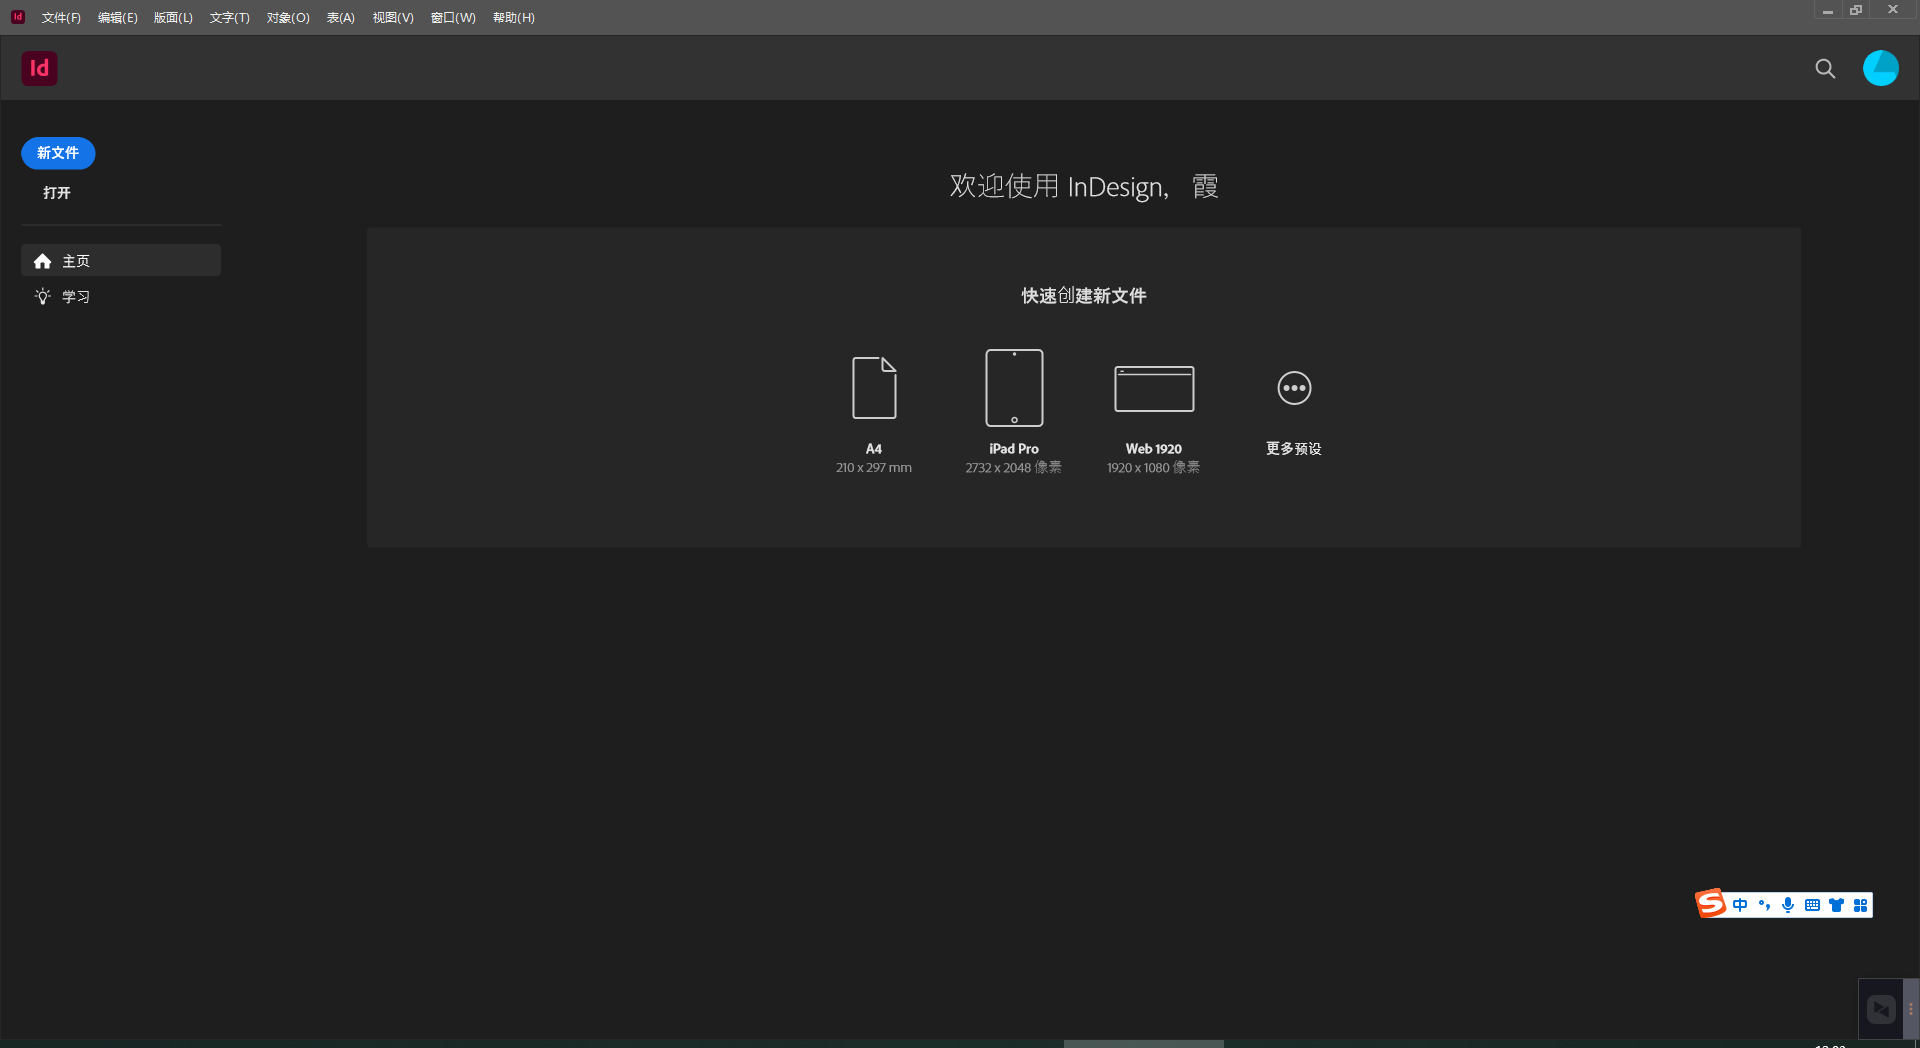 Adobe InDesign 2023 v18.4.0.56 for windows instal